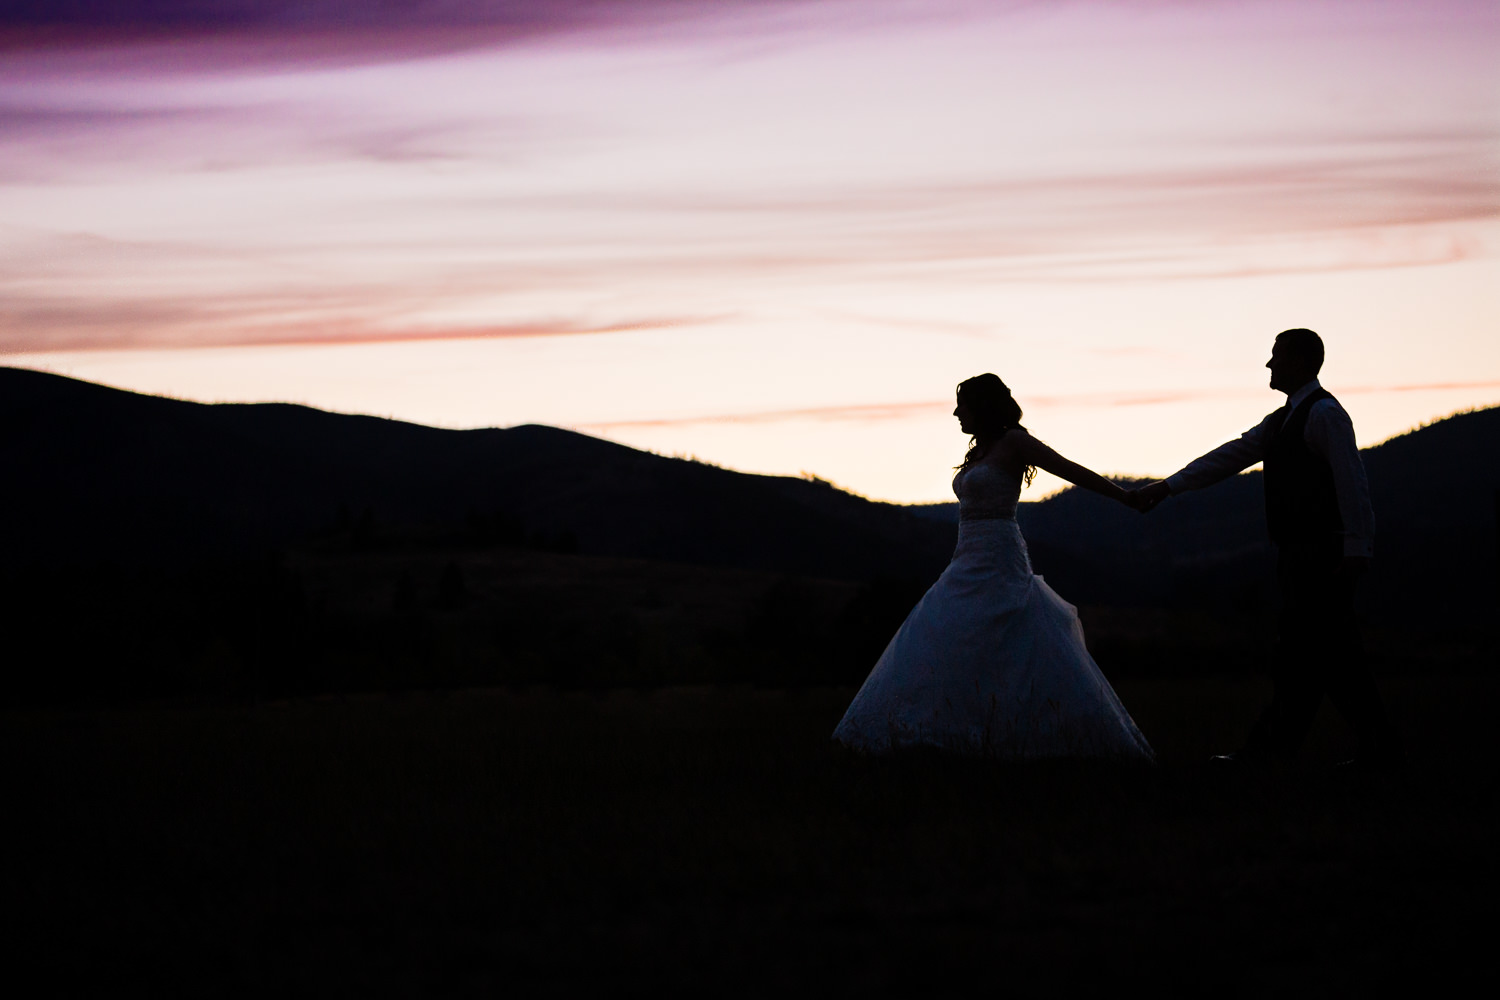 heritage-hall-missoula-montana-bride-groom-sunset-walking-silhouette.jpg